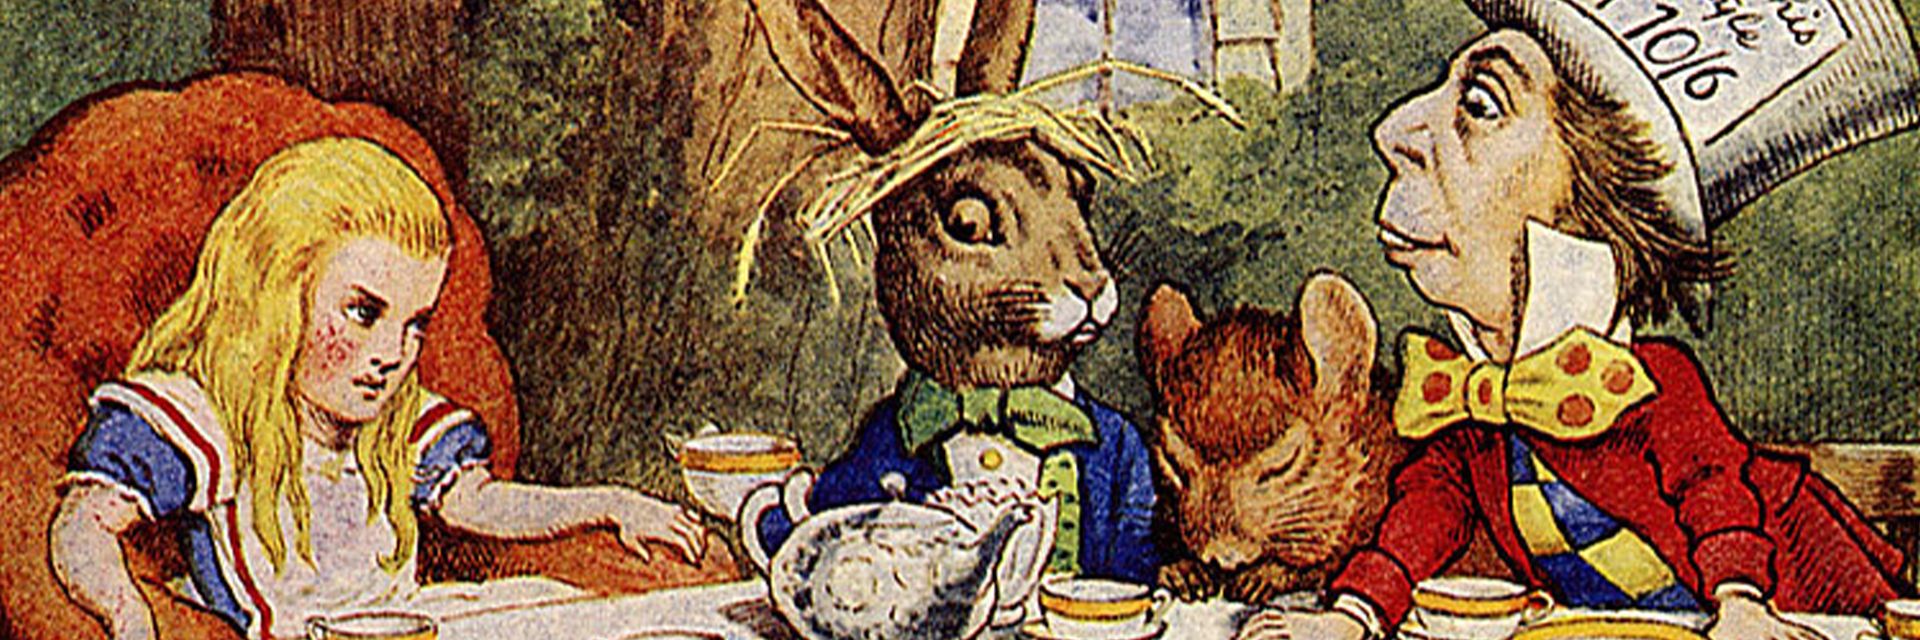 Alice in Wonderland&#8217;s Hidden Satire&#58; Math Slips Down the Rabbit Hole